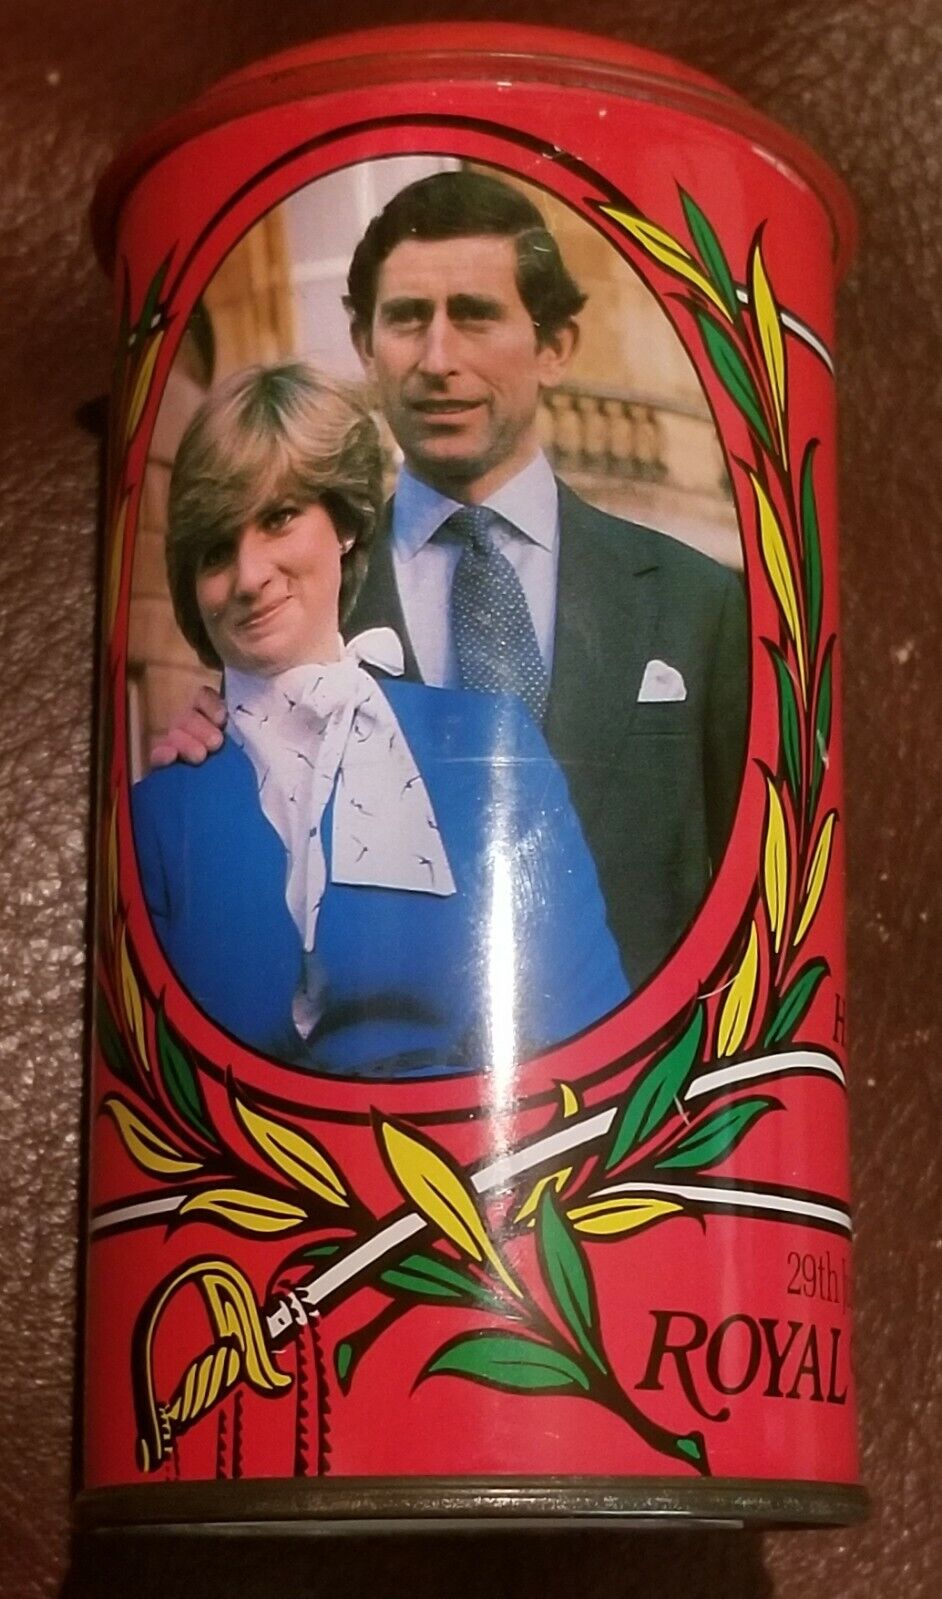 1981 Princess Diana Prince Charles Royal Wedding bank now King Charles 